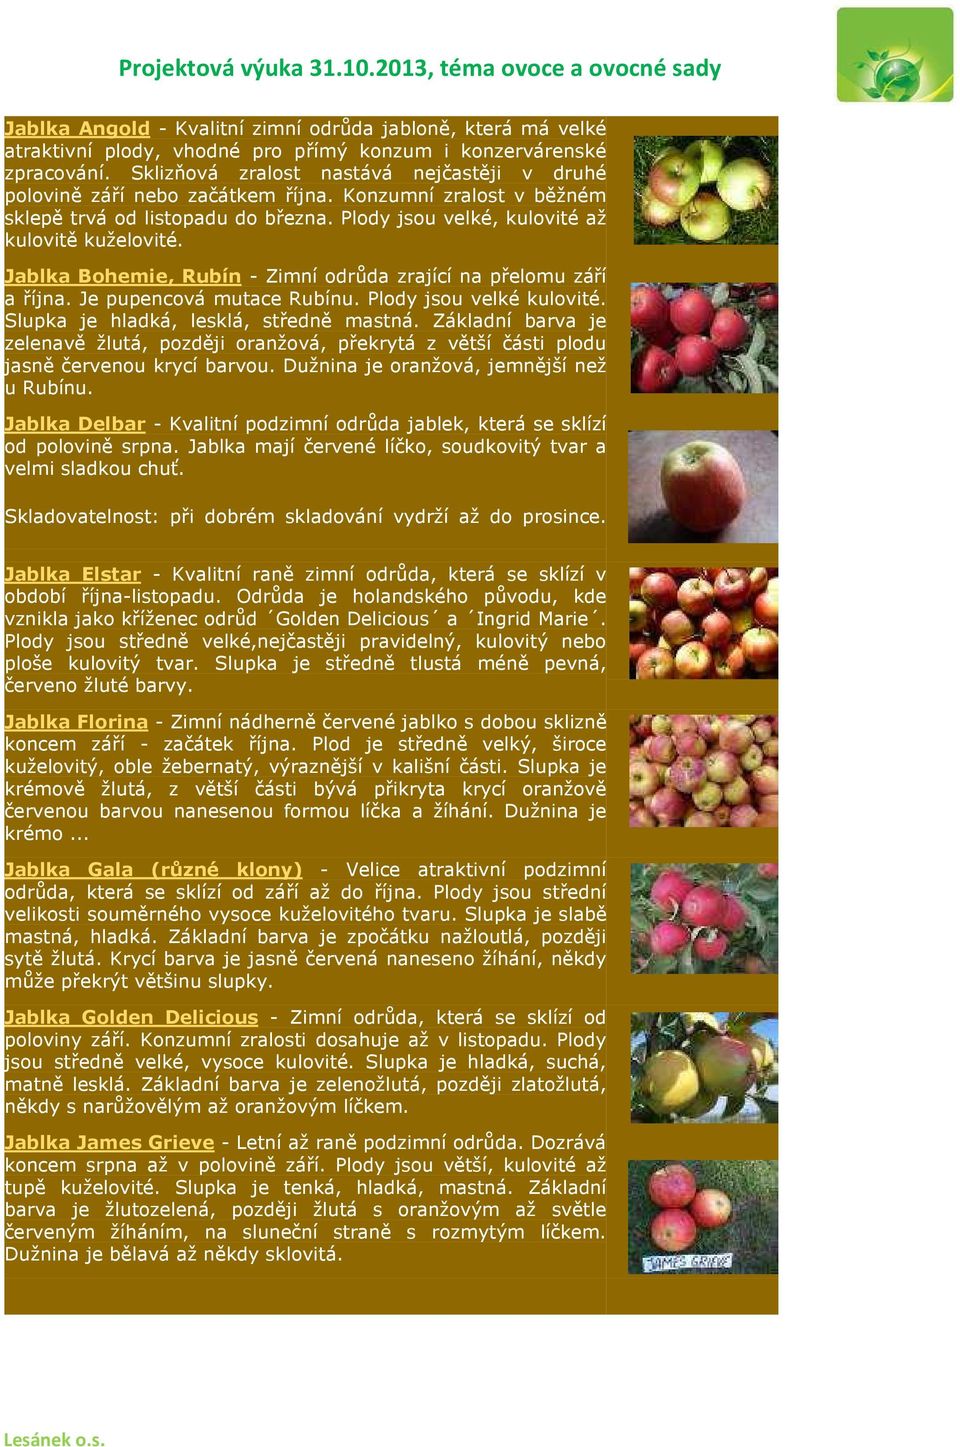 Jablka Bohemie, Rubín - Zimní odrůda zrající na přelomu září a října. Je pupencová mutace Rubínu. Plody jsou velké kulovité. Slupka je hladká, lesklá, středně mastná.